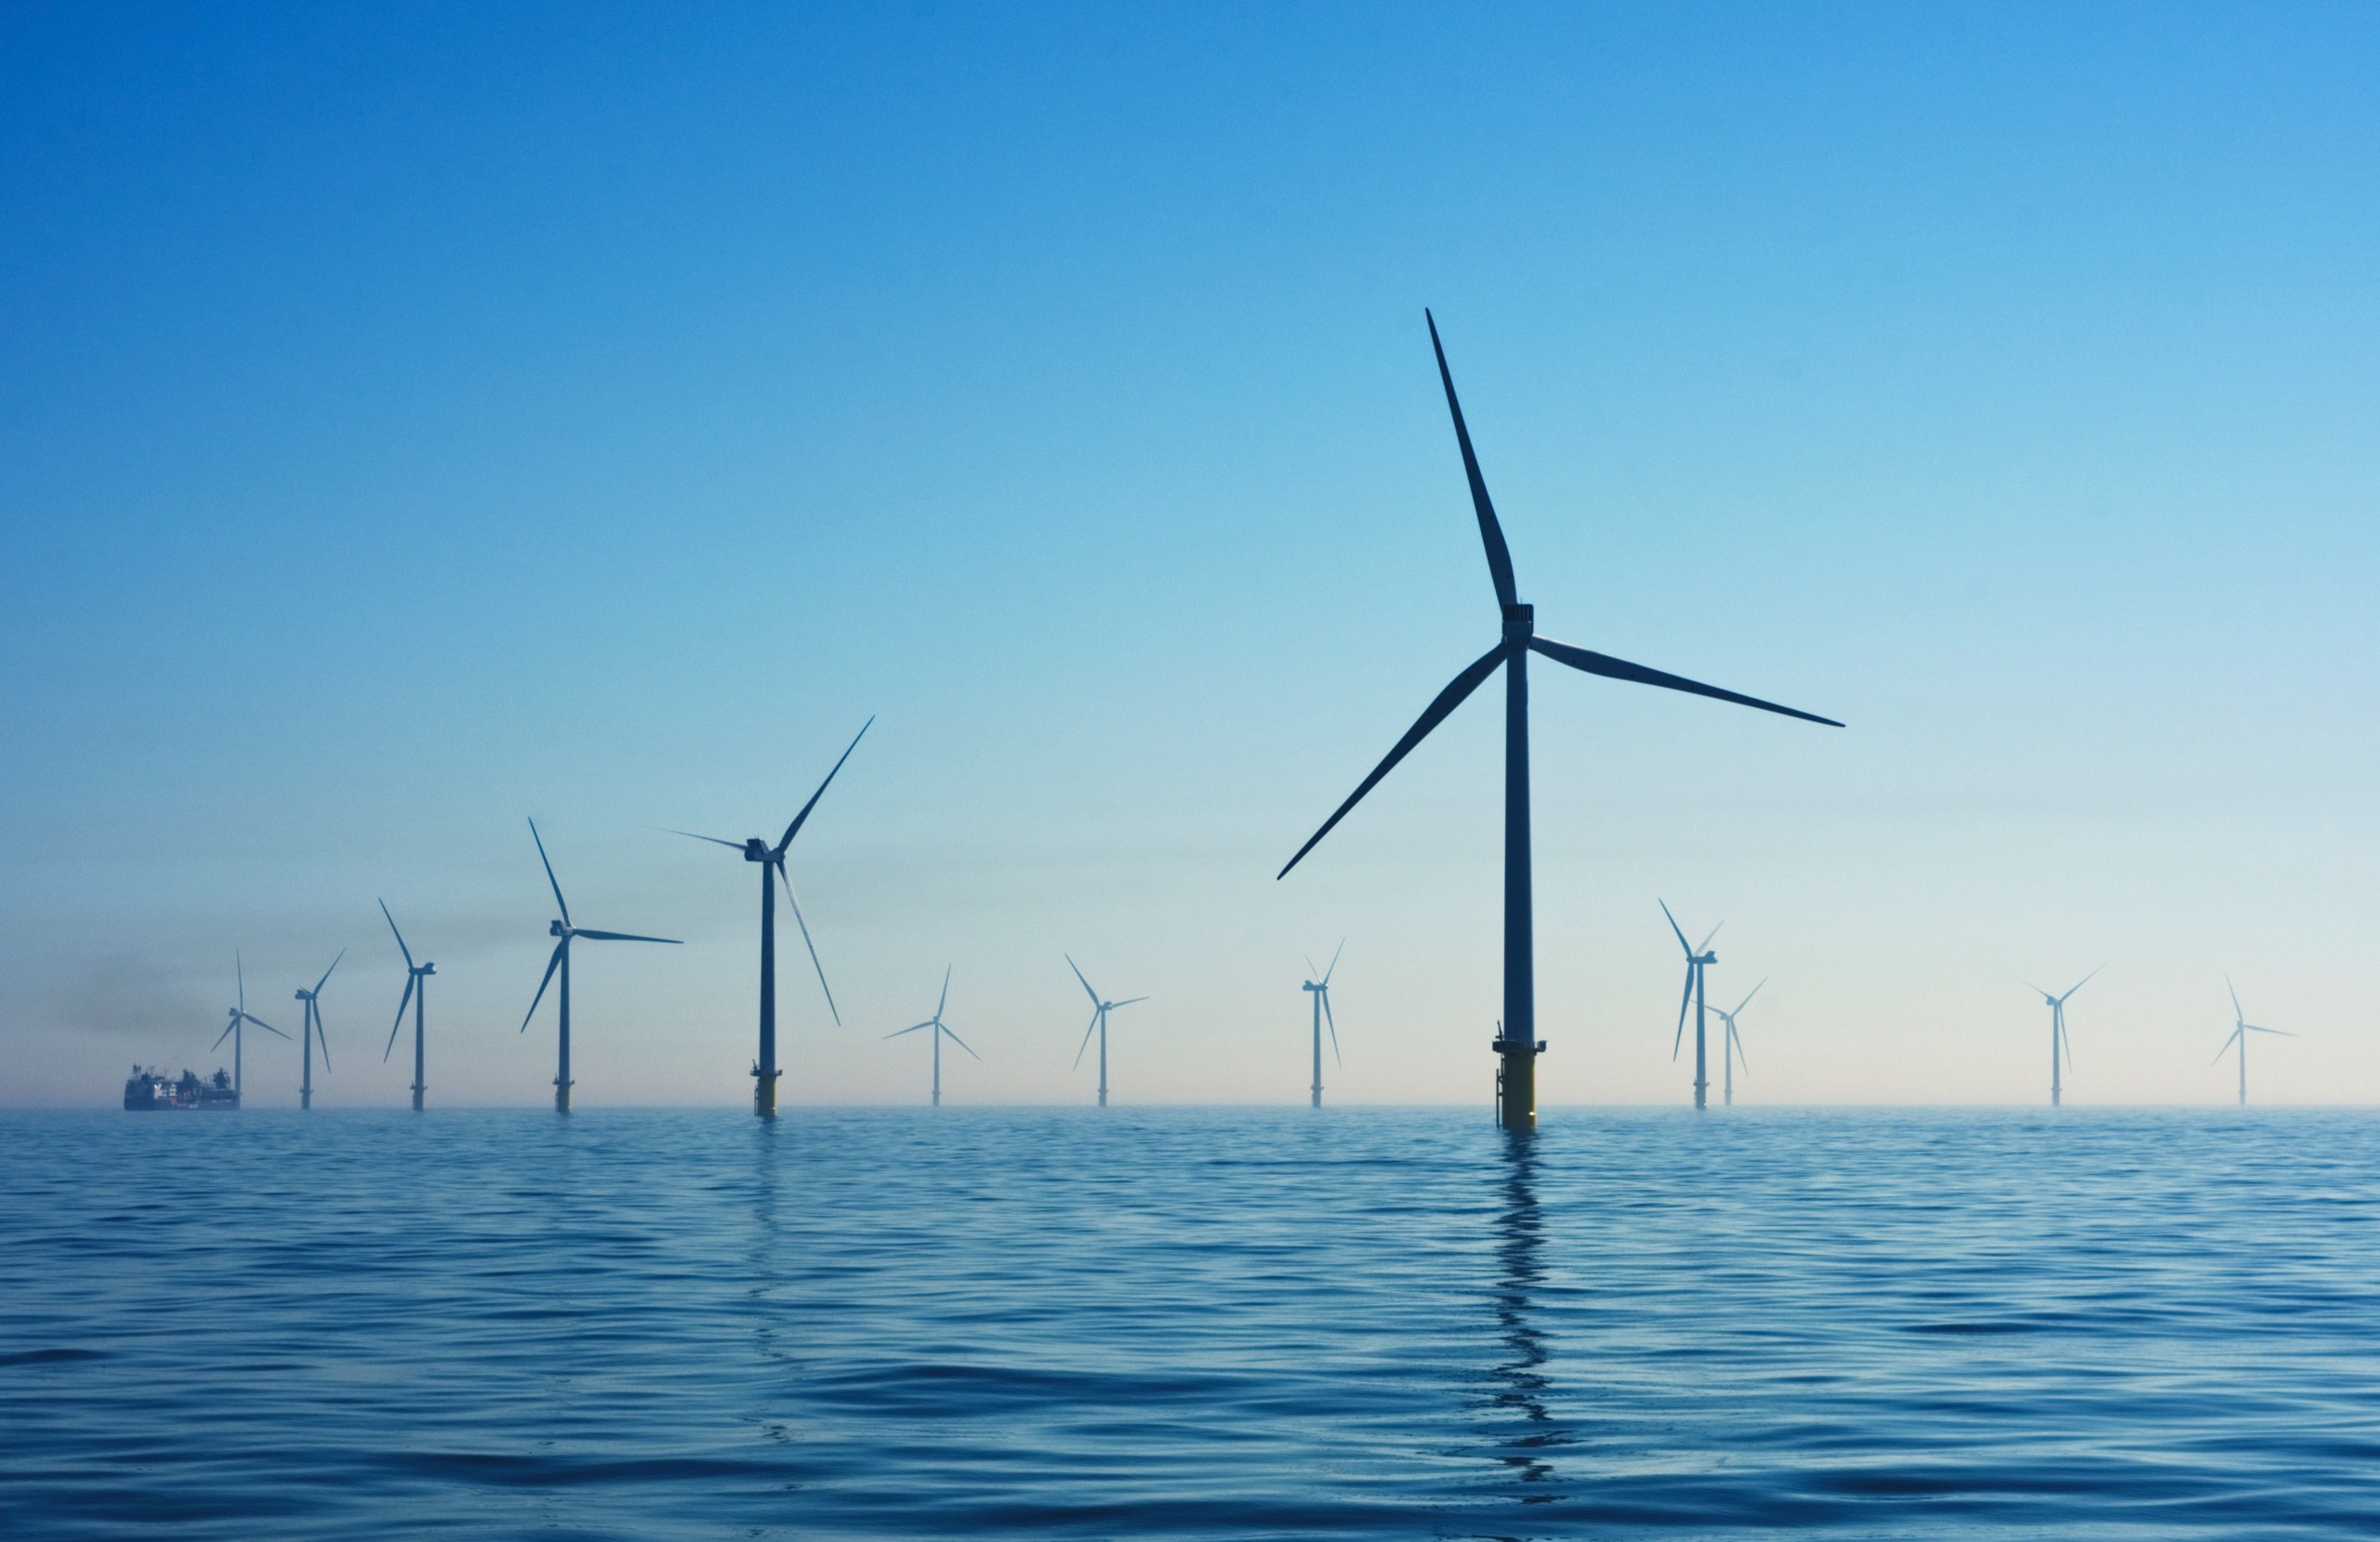 Dänemark plant erste künstliche Energieinsel